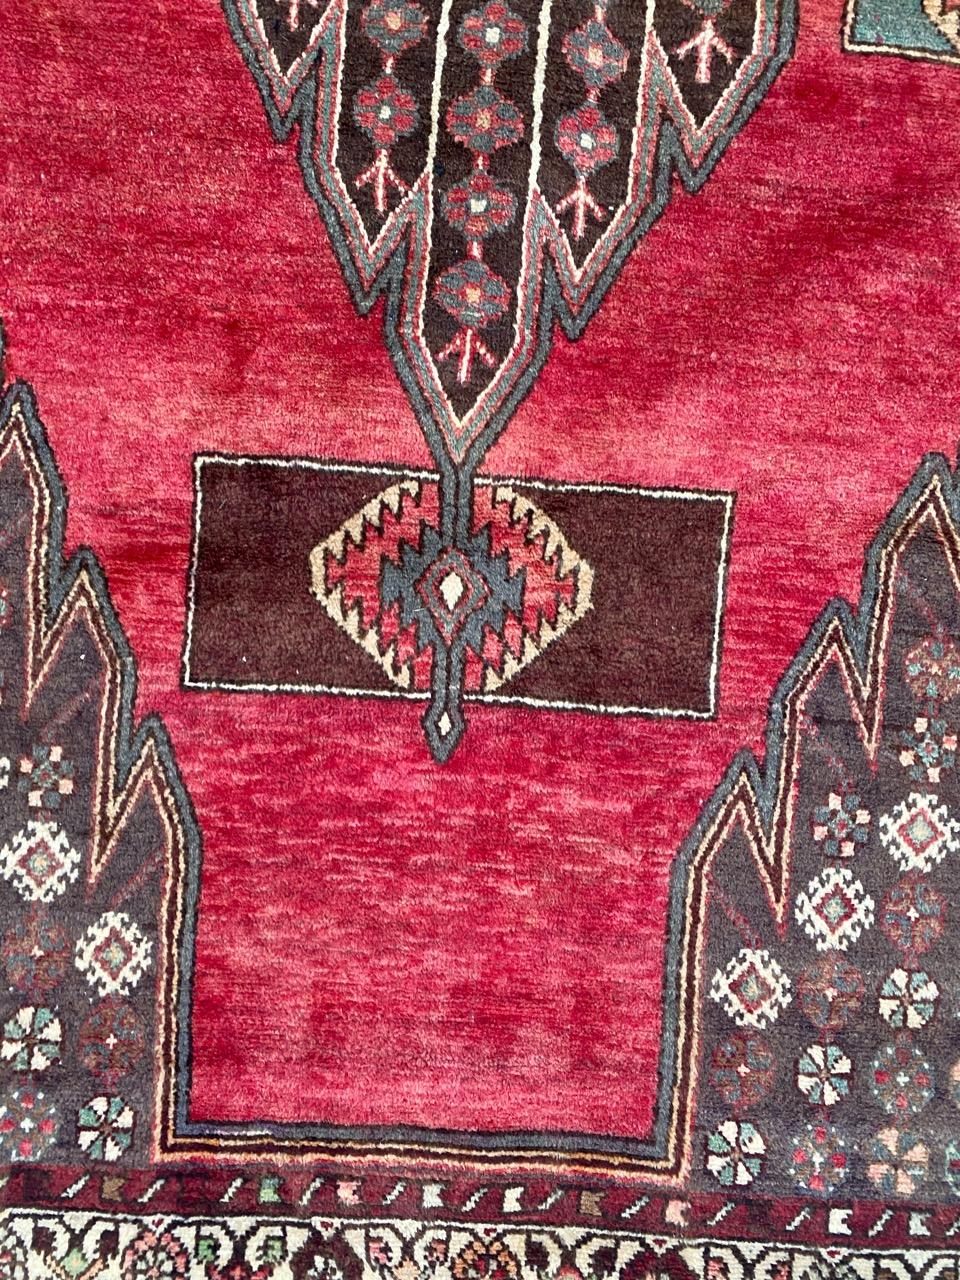 Midcentury Stammes-Teppich mit geometrischem Design und schönen Farben, komplett handgeknüpft mit Wolle Samt auf Baumwollbasis.